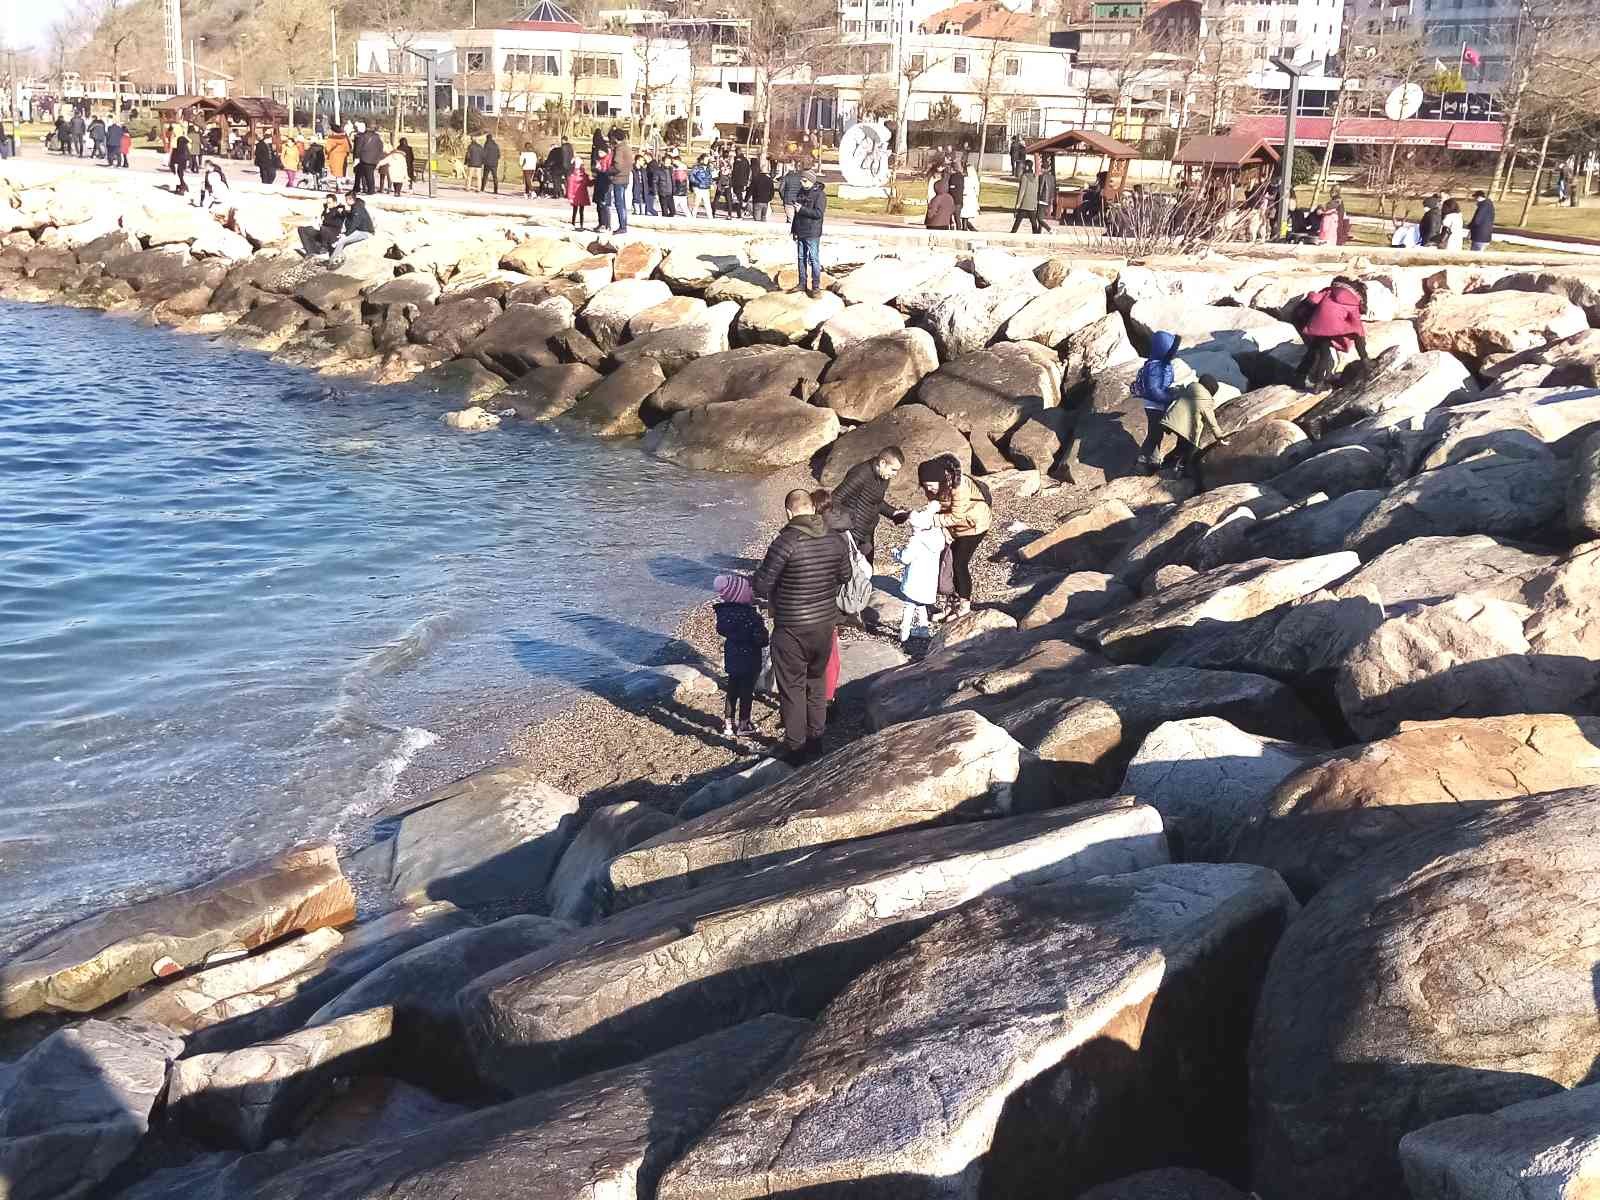 Jeoloji Mühendisi Aykan, Marmara’daki deniz suyu çekilmesini değerlendirdi #balikesir